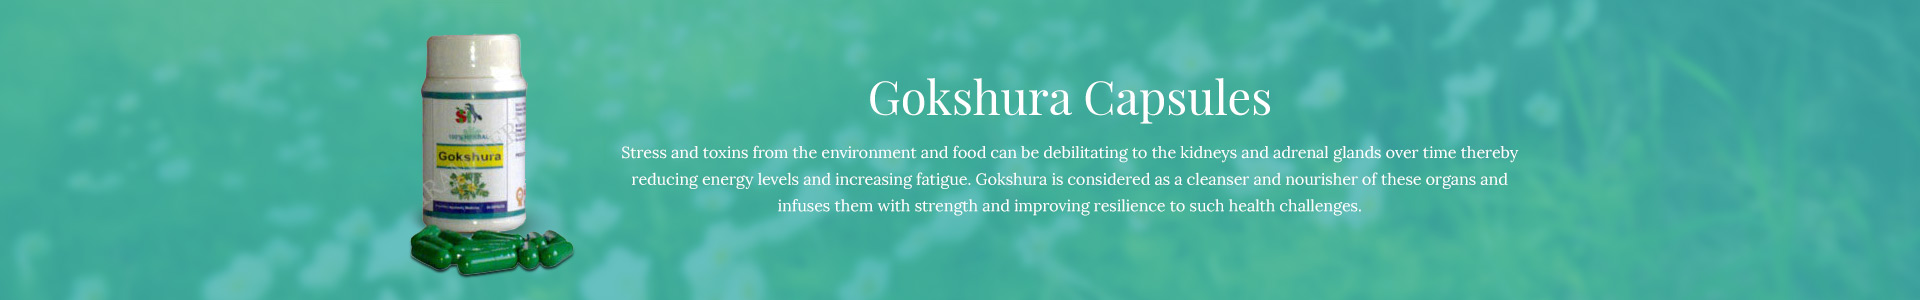 gokshura-capsules